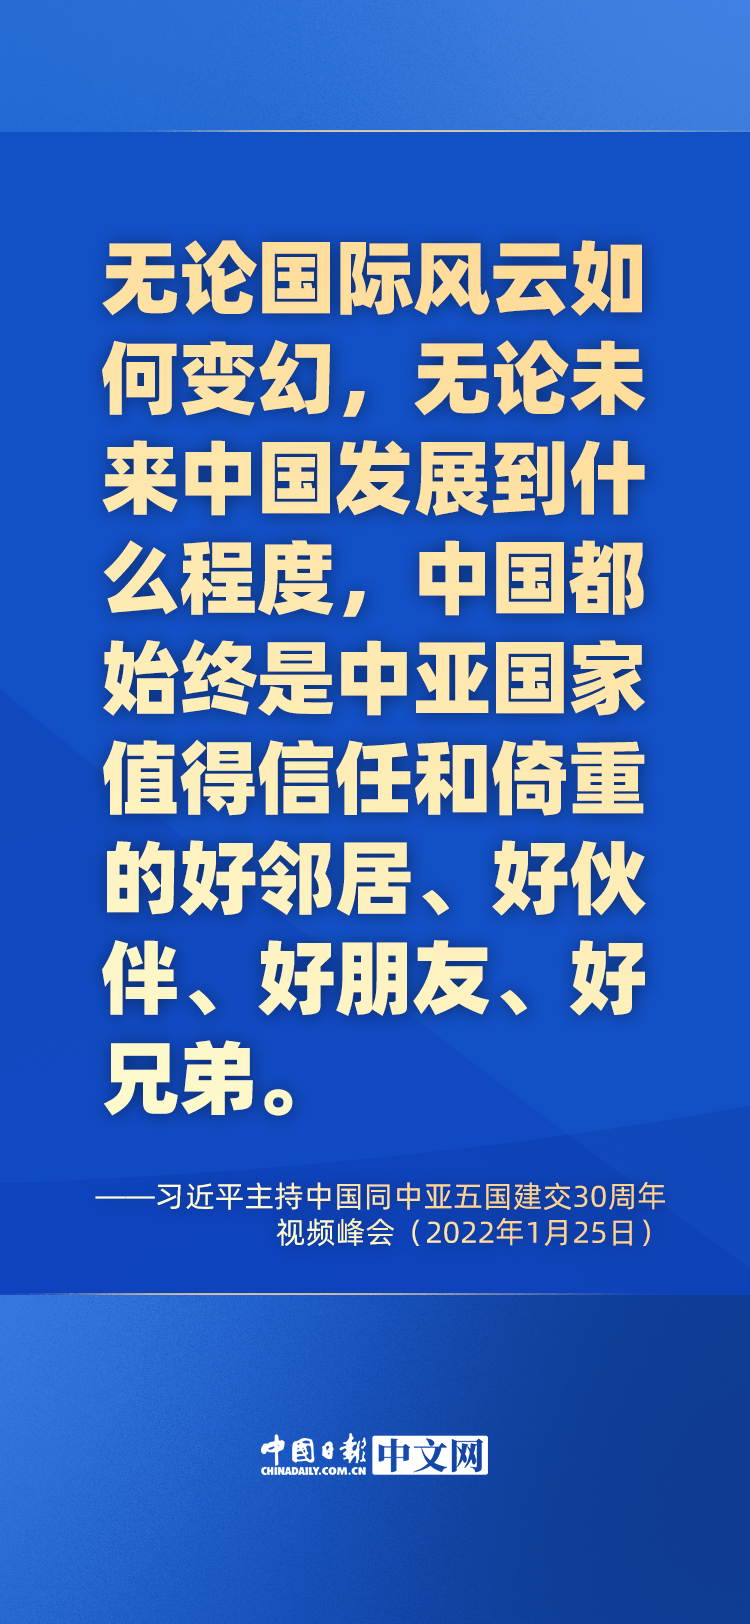 海报 | 习近平“解码”中国同中亚五国30年成功合作